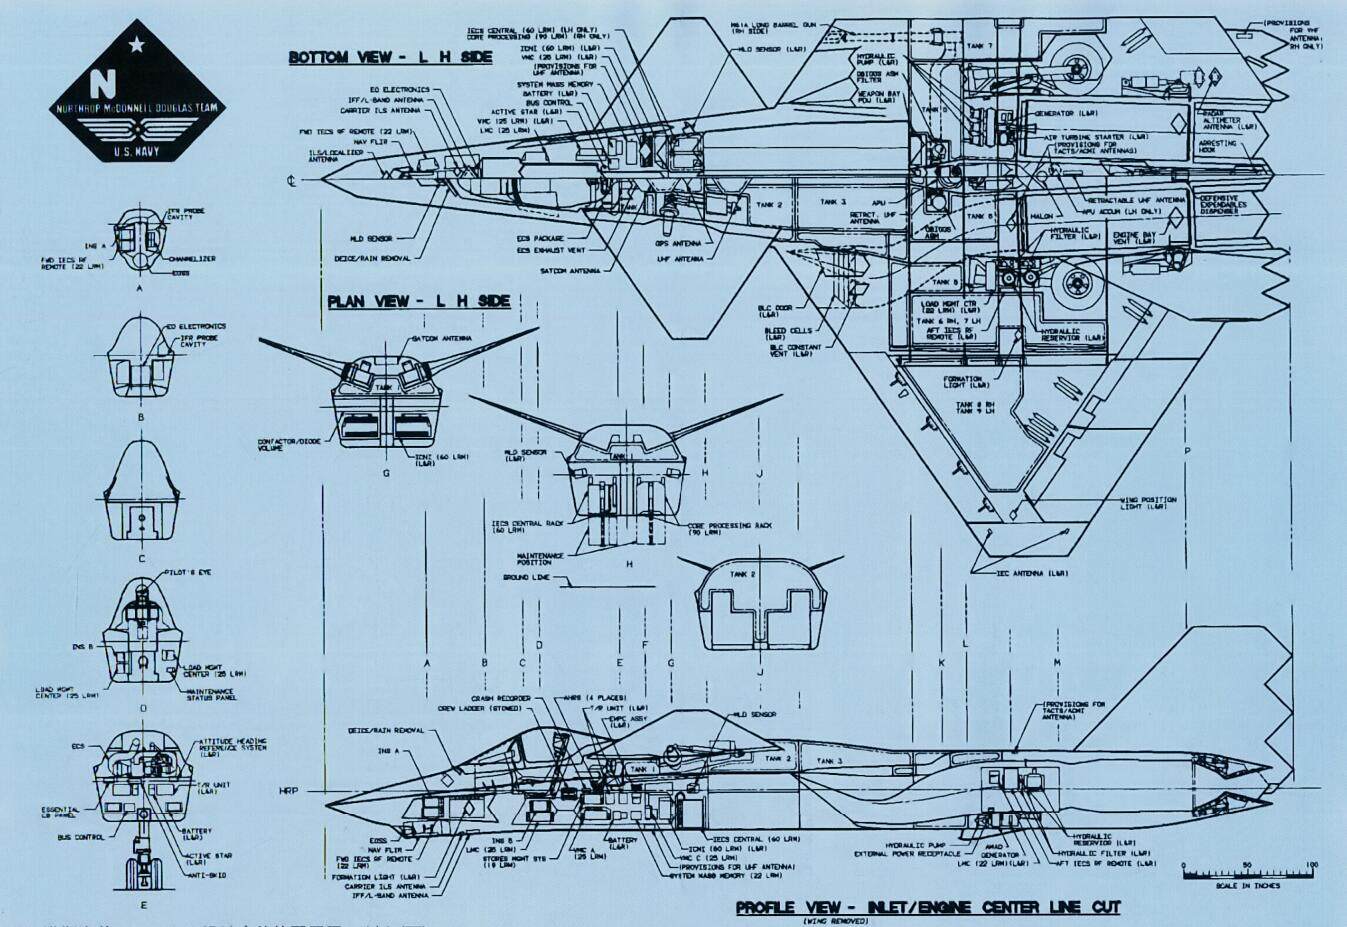 除此之外，DP527还加高了驾驶舱位置以优化航母起降视野。可以说相比YF-23/F-23的构型，已经完全是另一条技术路线的结果。